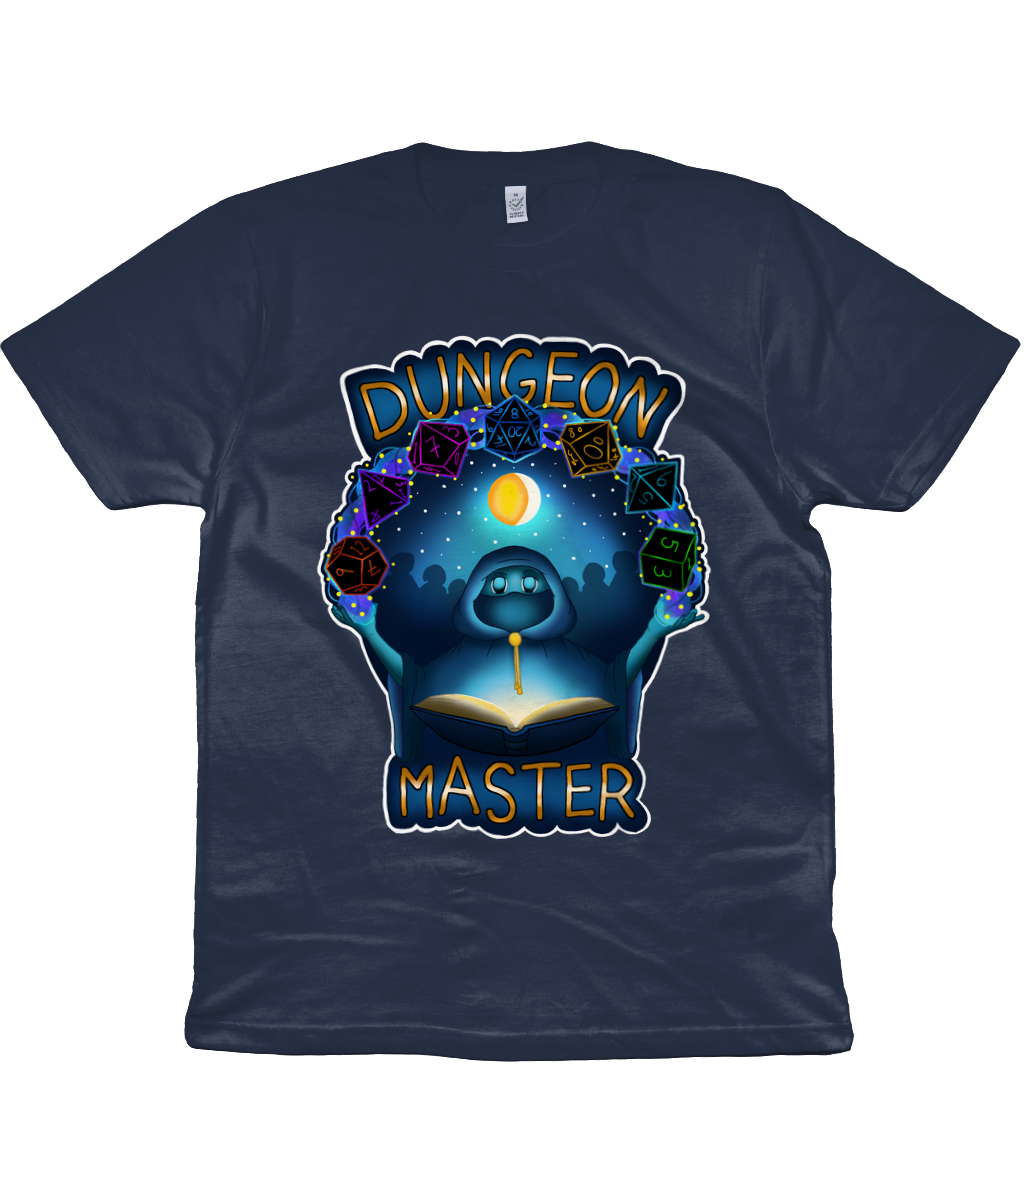 Dungeon Master Unisex T-Shirt